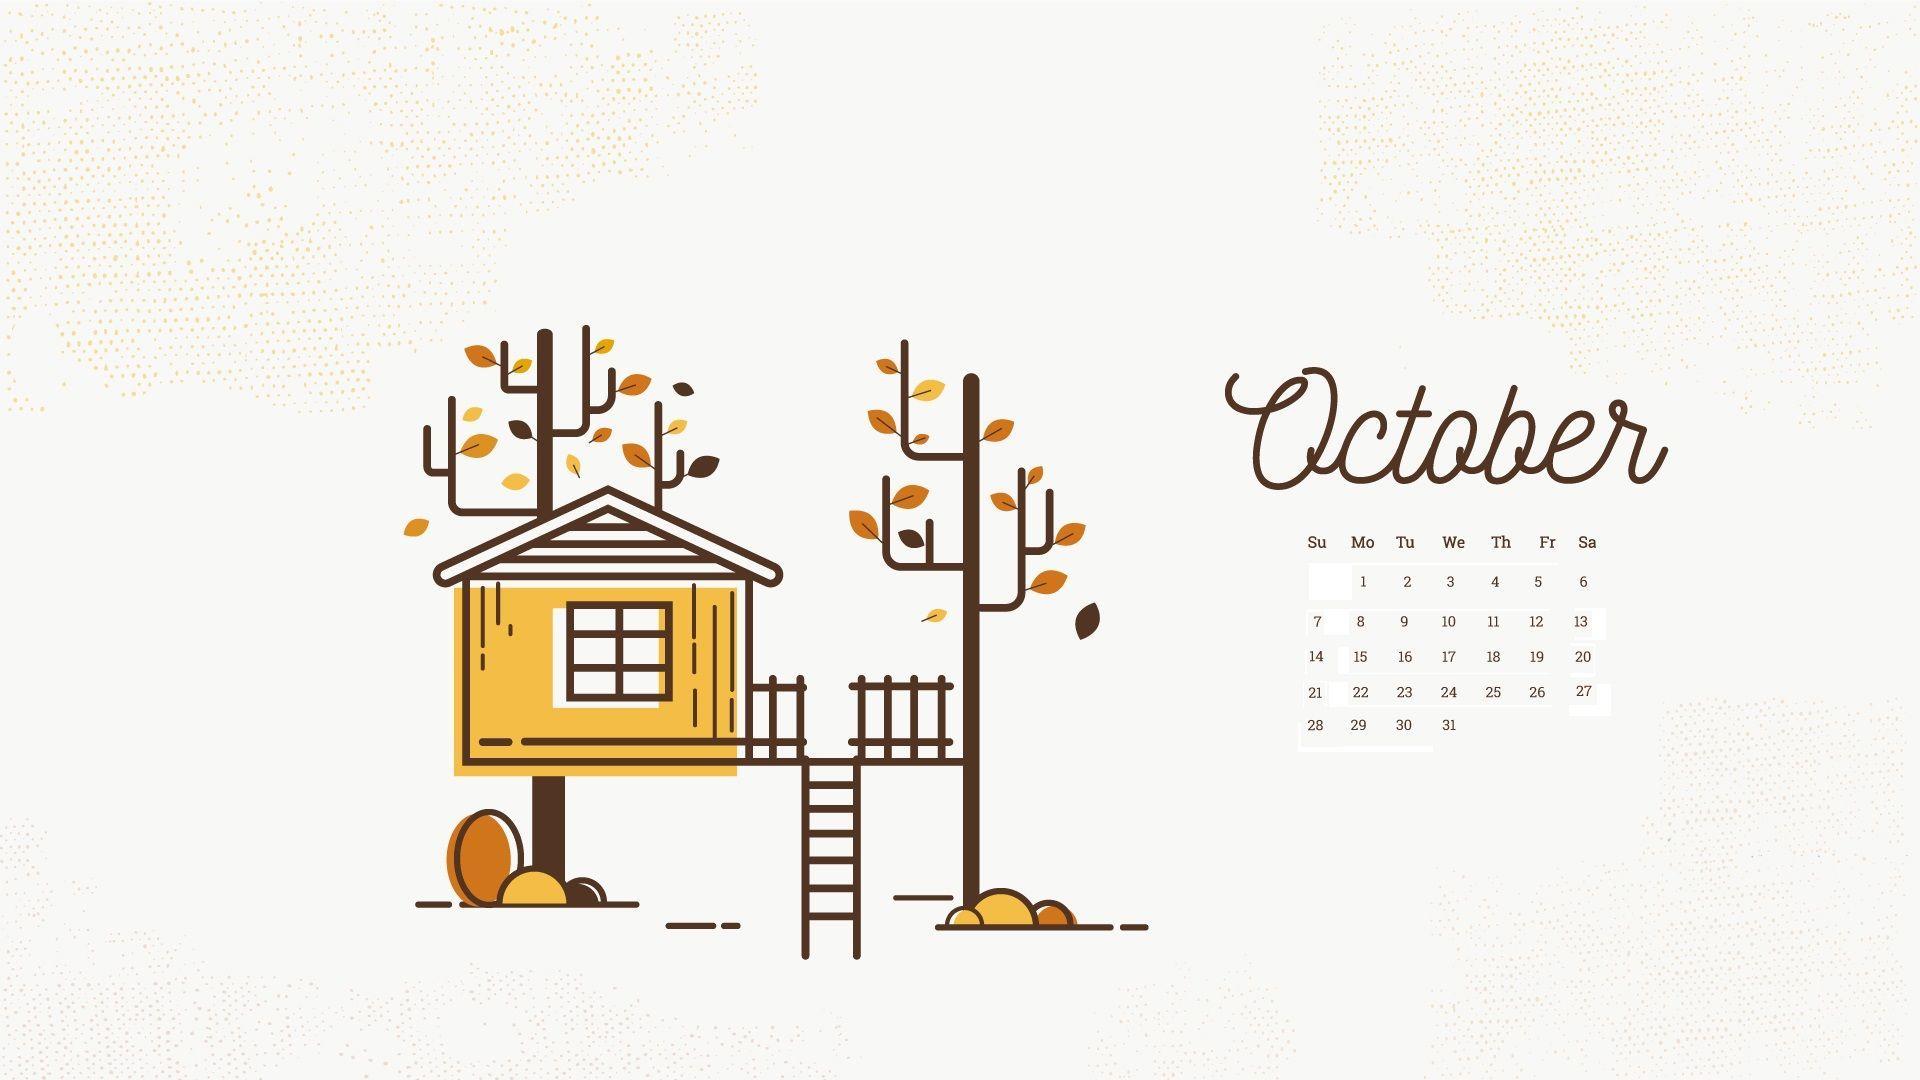 October 2018 Calendar Wallpaper. Calendar 2018